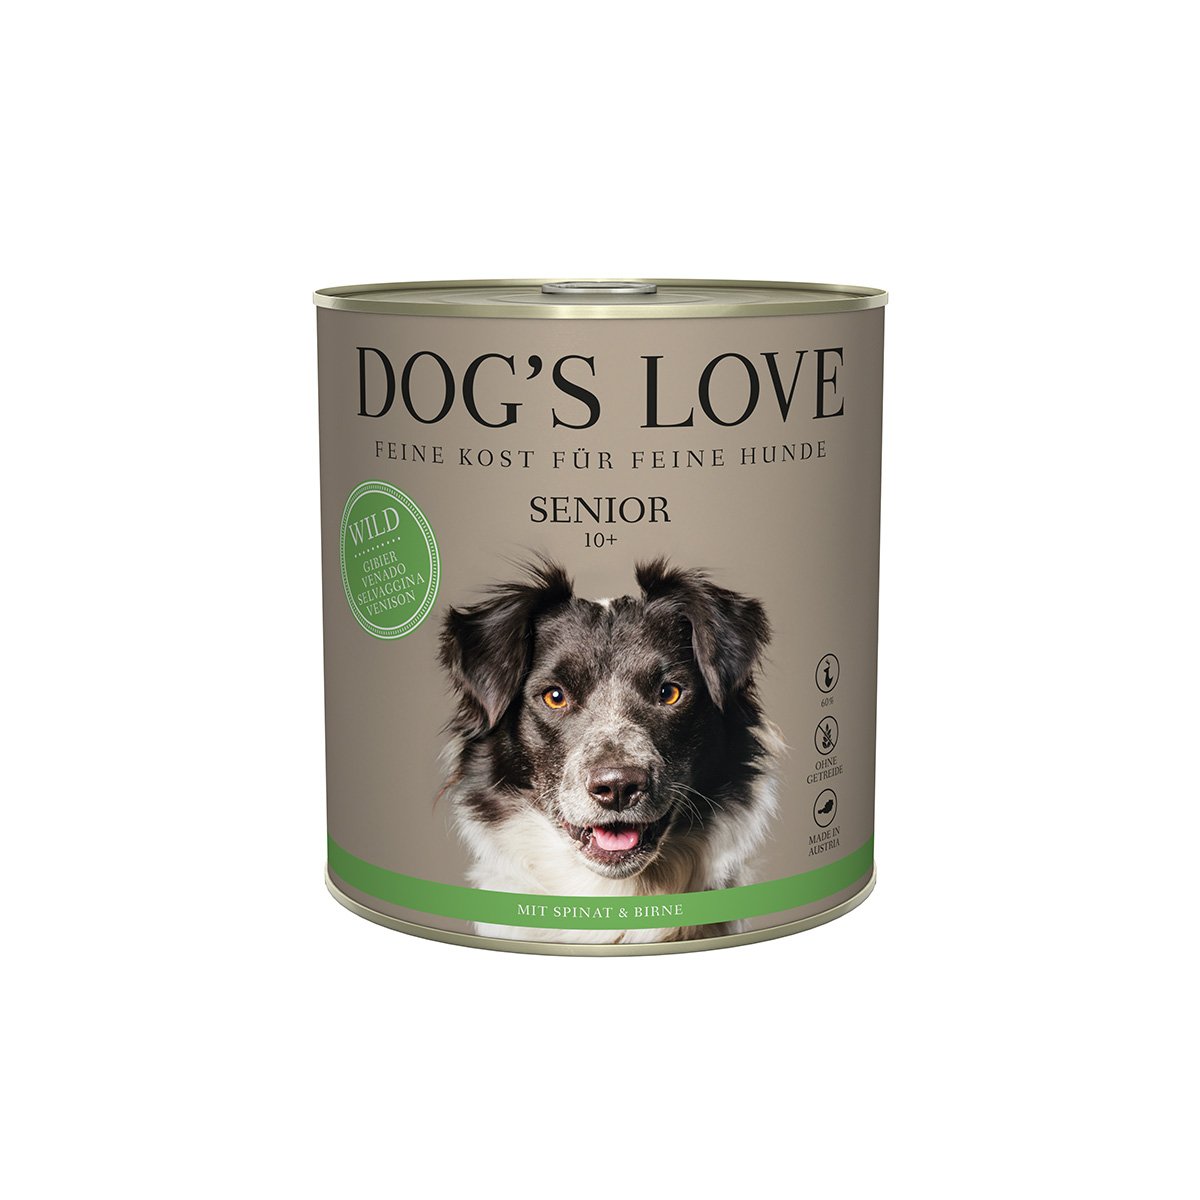 DOG'S LOVE SENIOR Wild 6x400g von Dog's Love